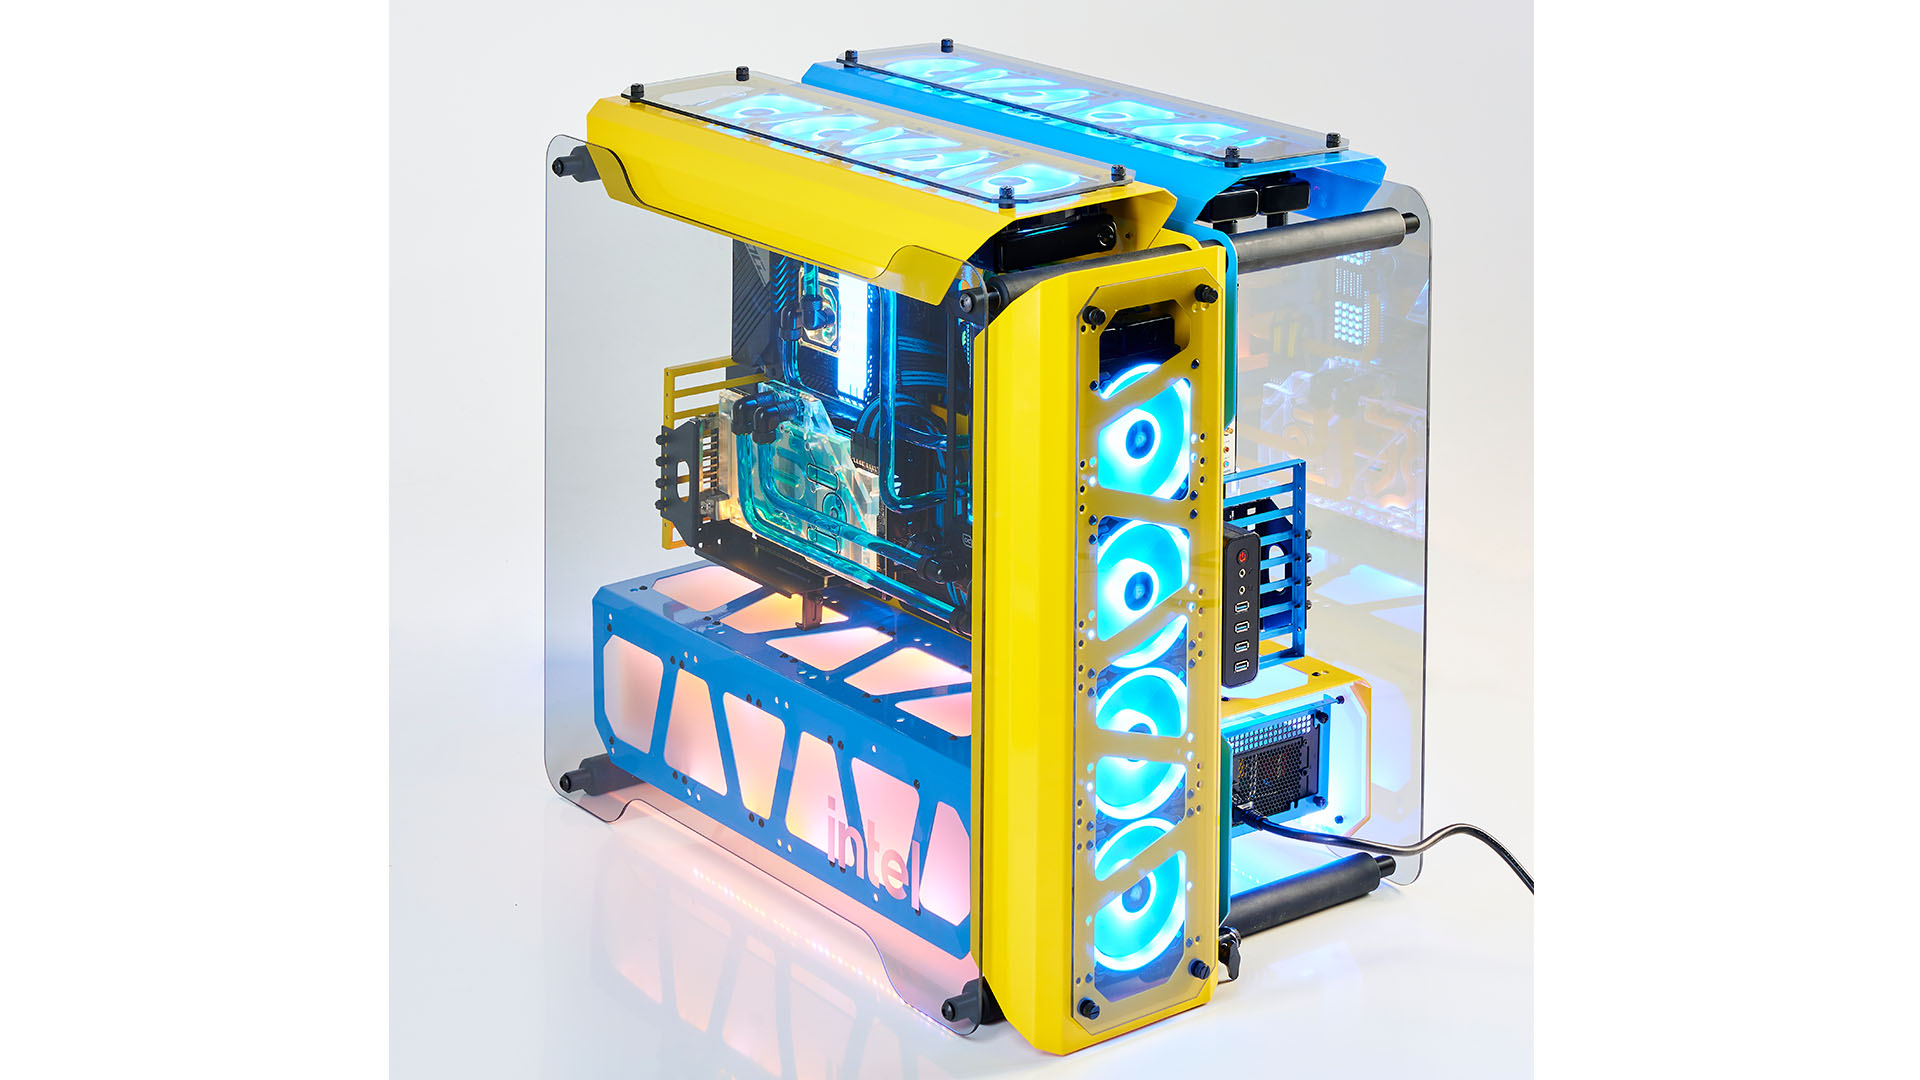 El sistema dual en la carcasa azul y amarilla de Intel